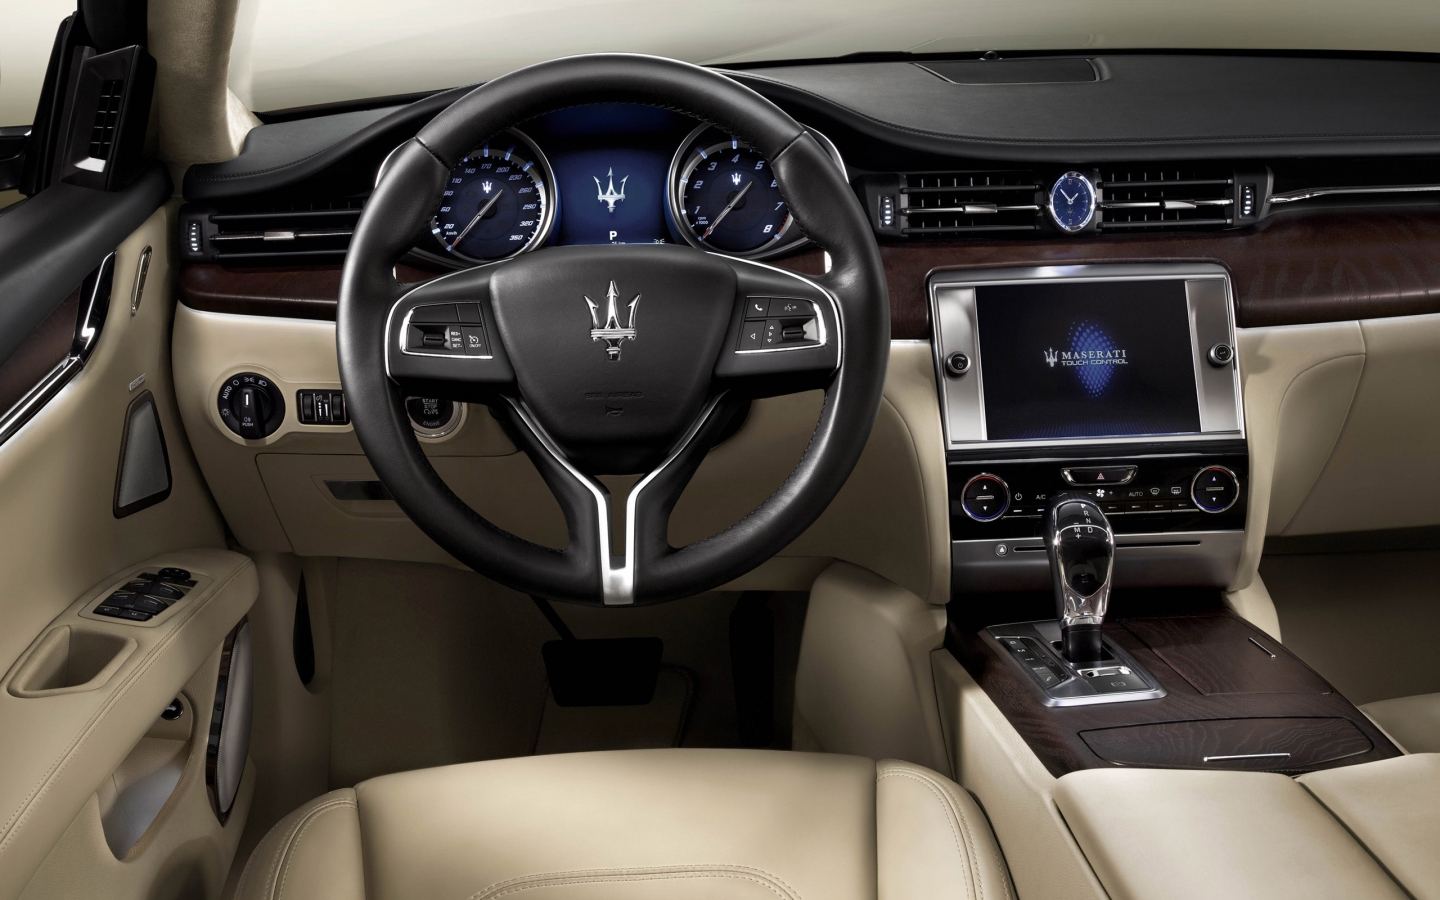 Interior of Maserati Quattroporte for 1440 x 900 widescreen resolution